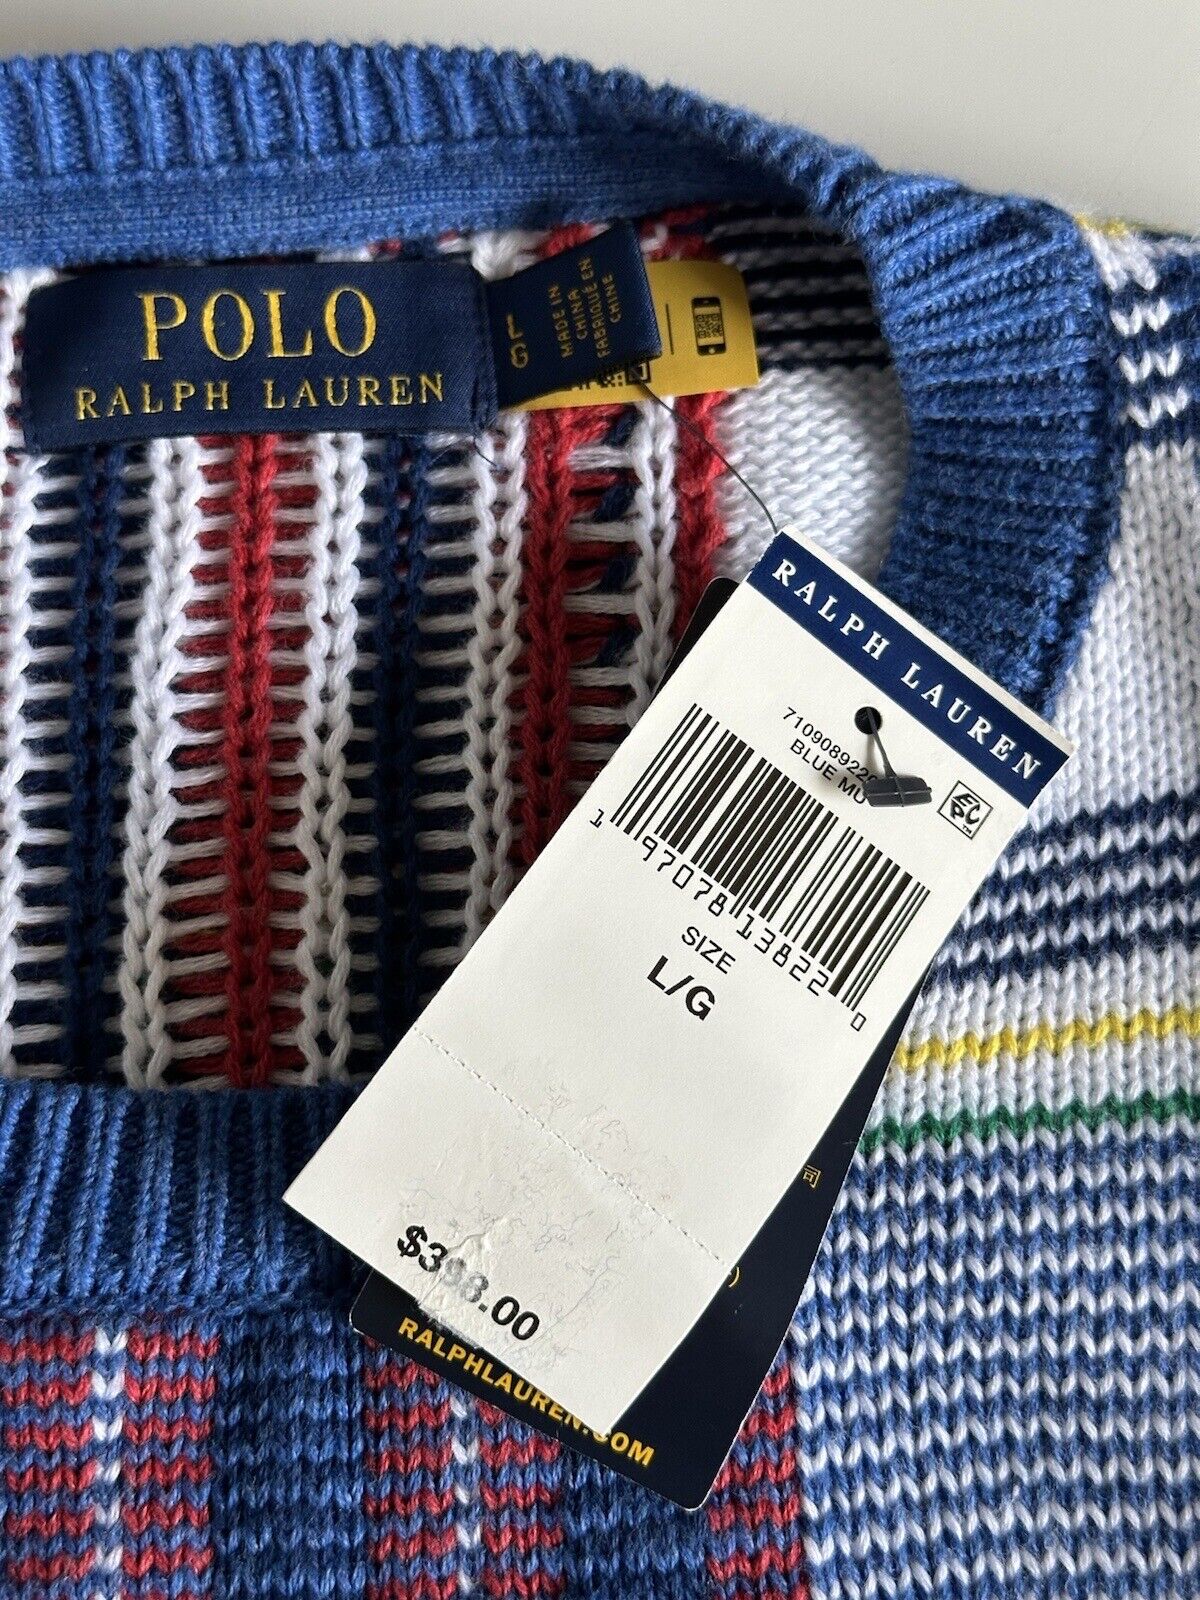 NWT $398 Polo Ralph Lauren Men's Knit Cotton Sweater Multicolor Large